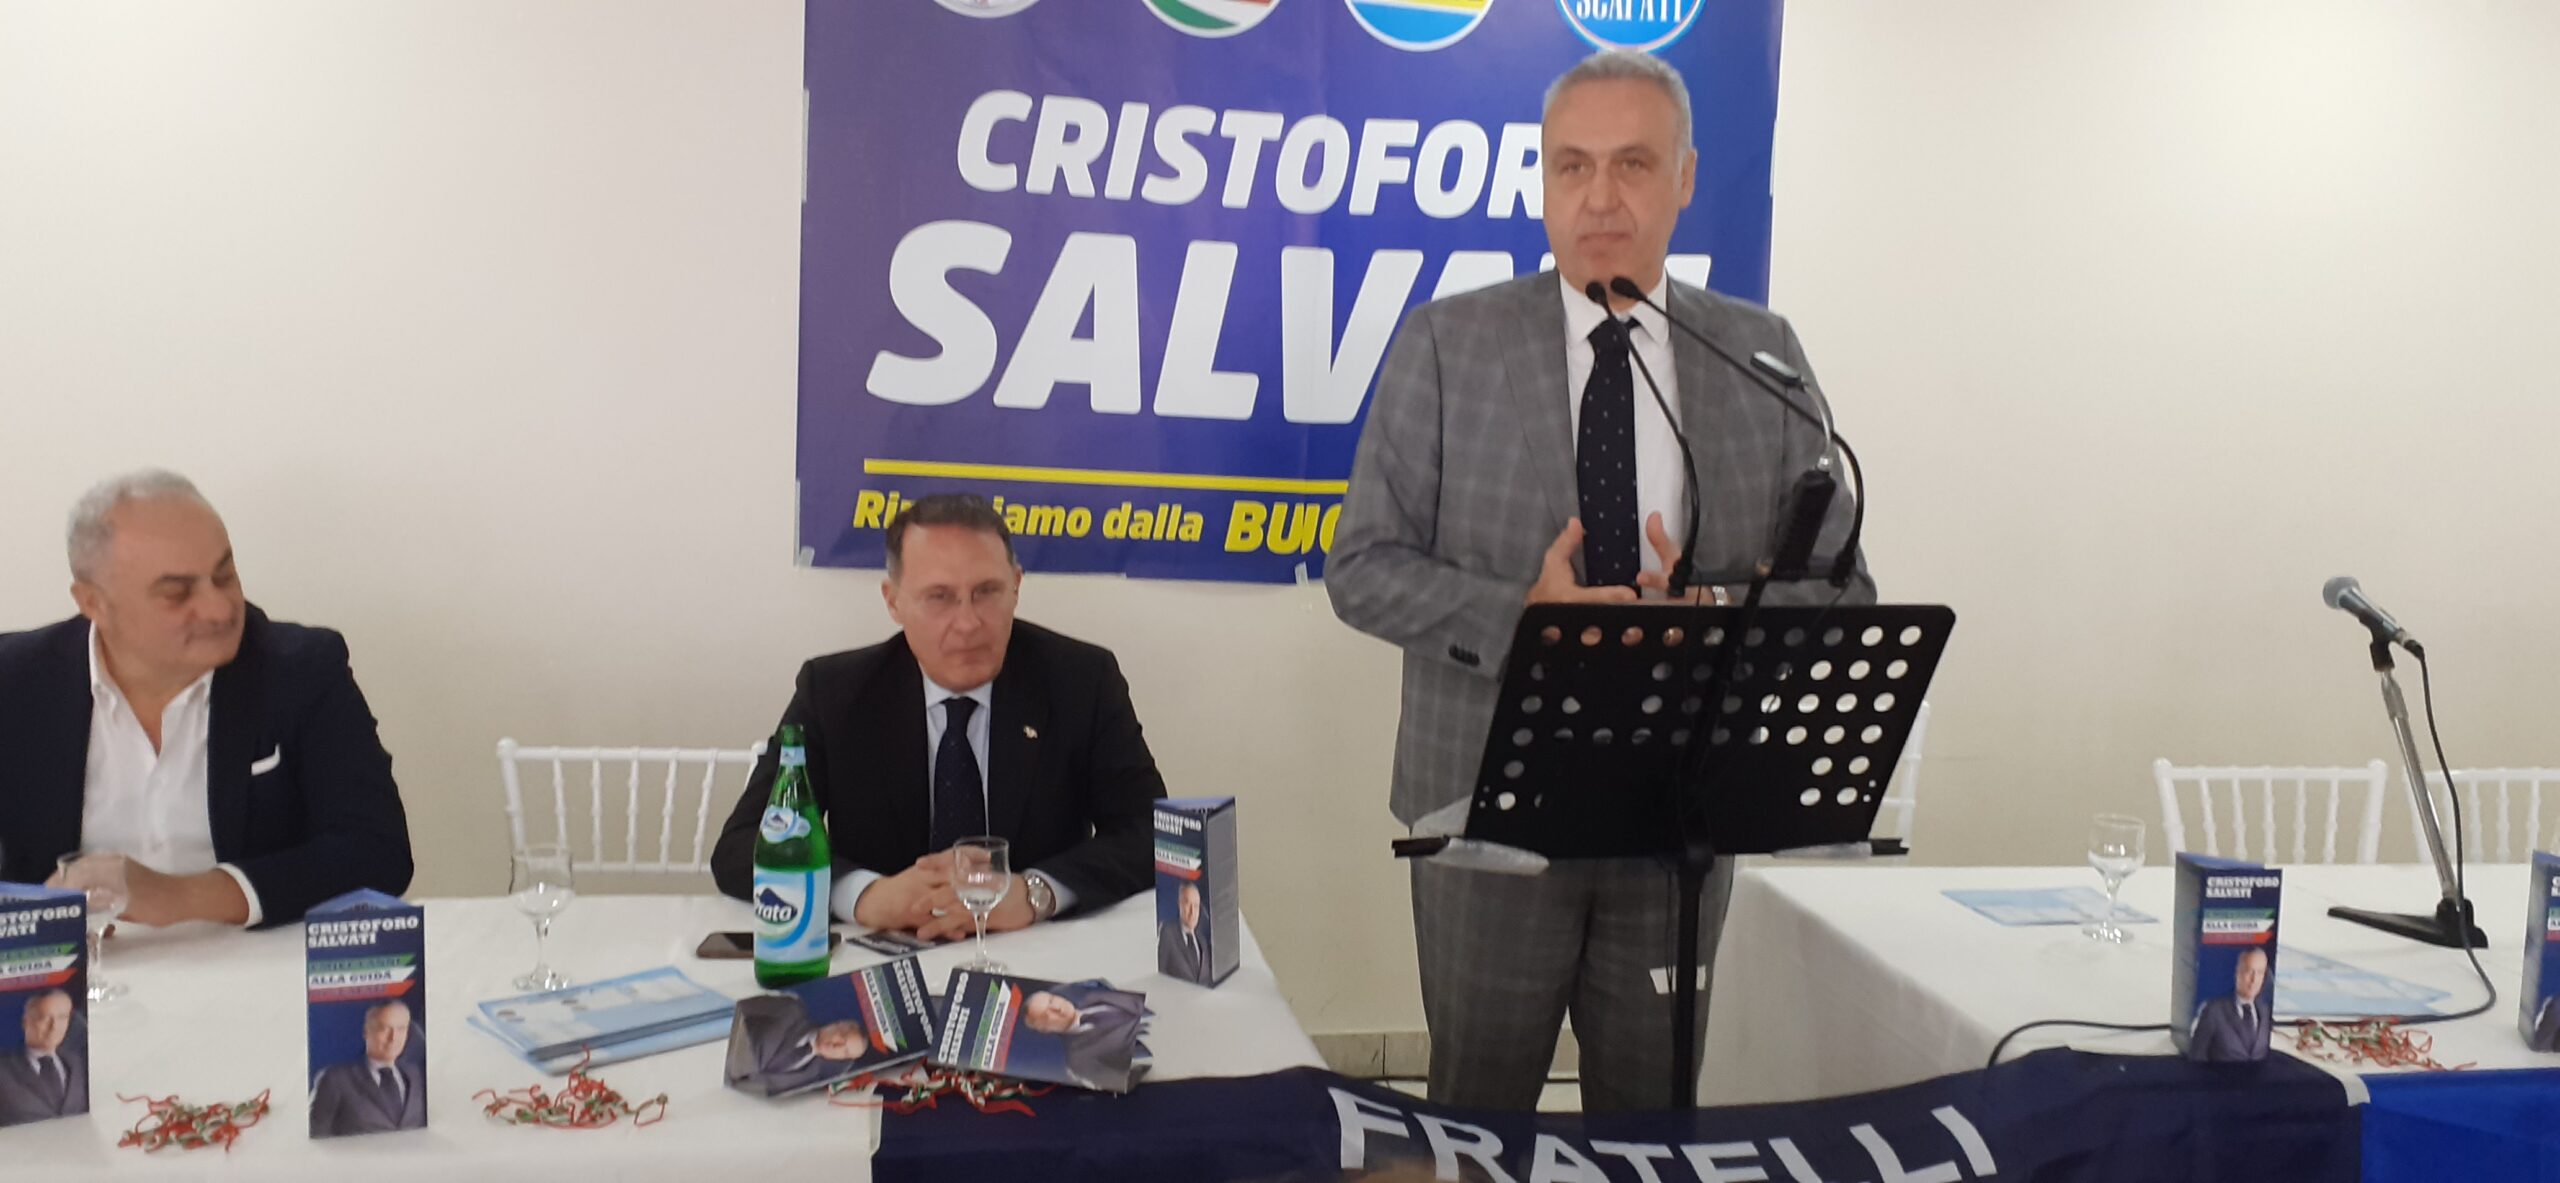 Scafati: Amministrative, viceMinistro Cirielli “Orgogliosi di nostro candidato Sindaco Salvati, esempio d’affidabilità”